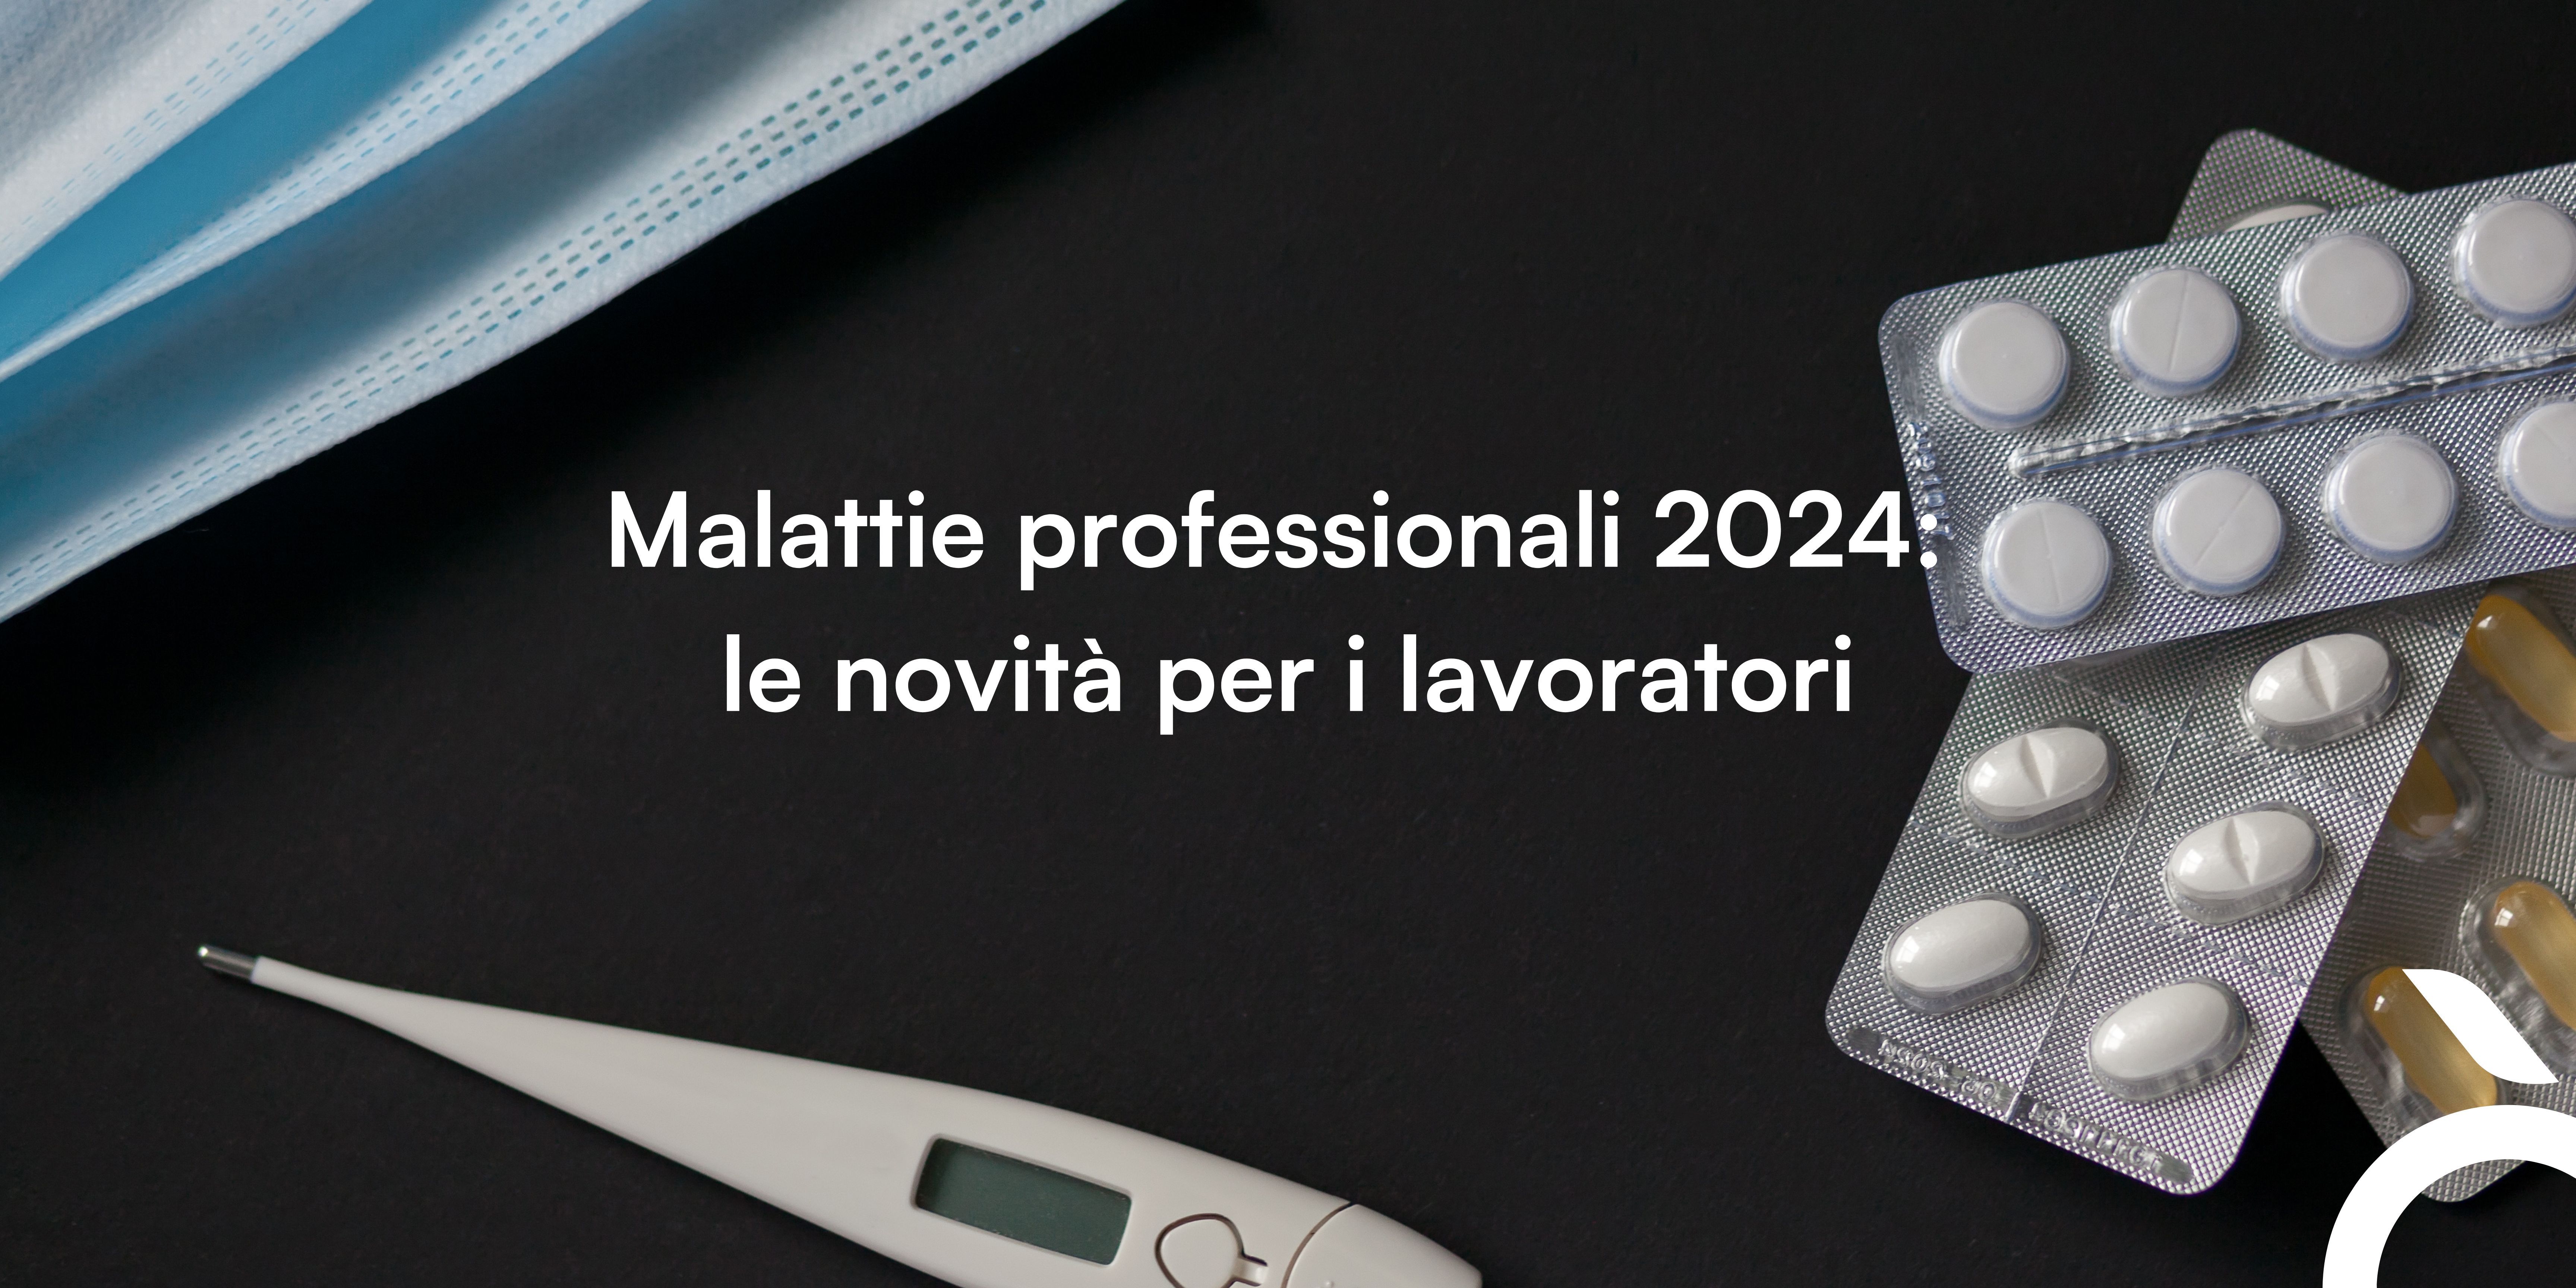 Malattie professionali 2024: le novità per i lavoratori